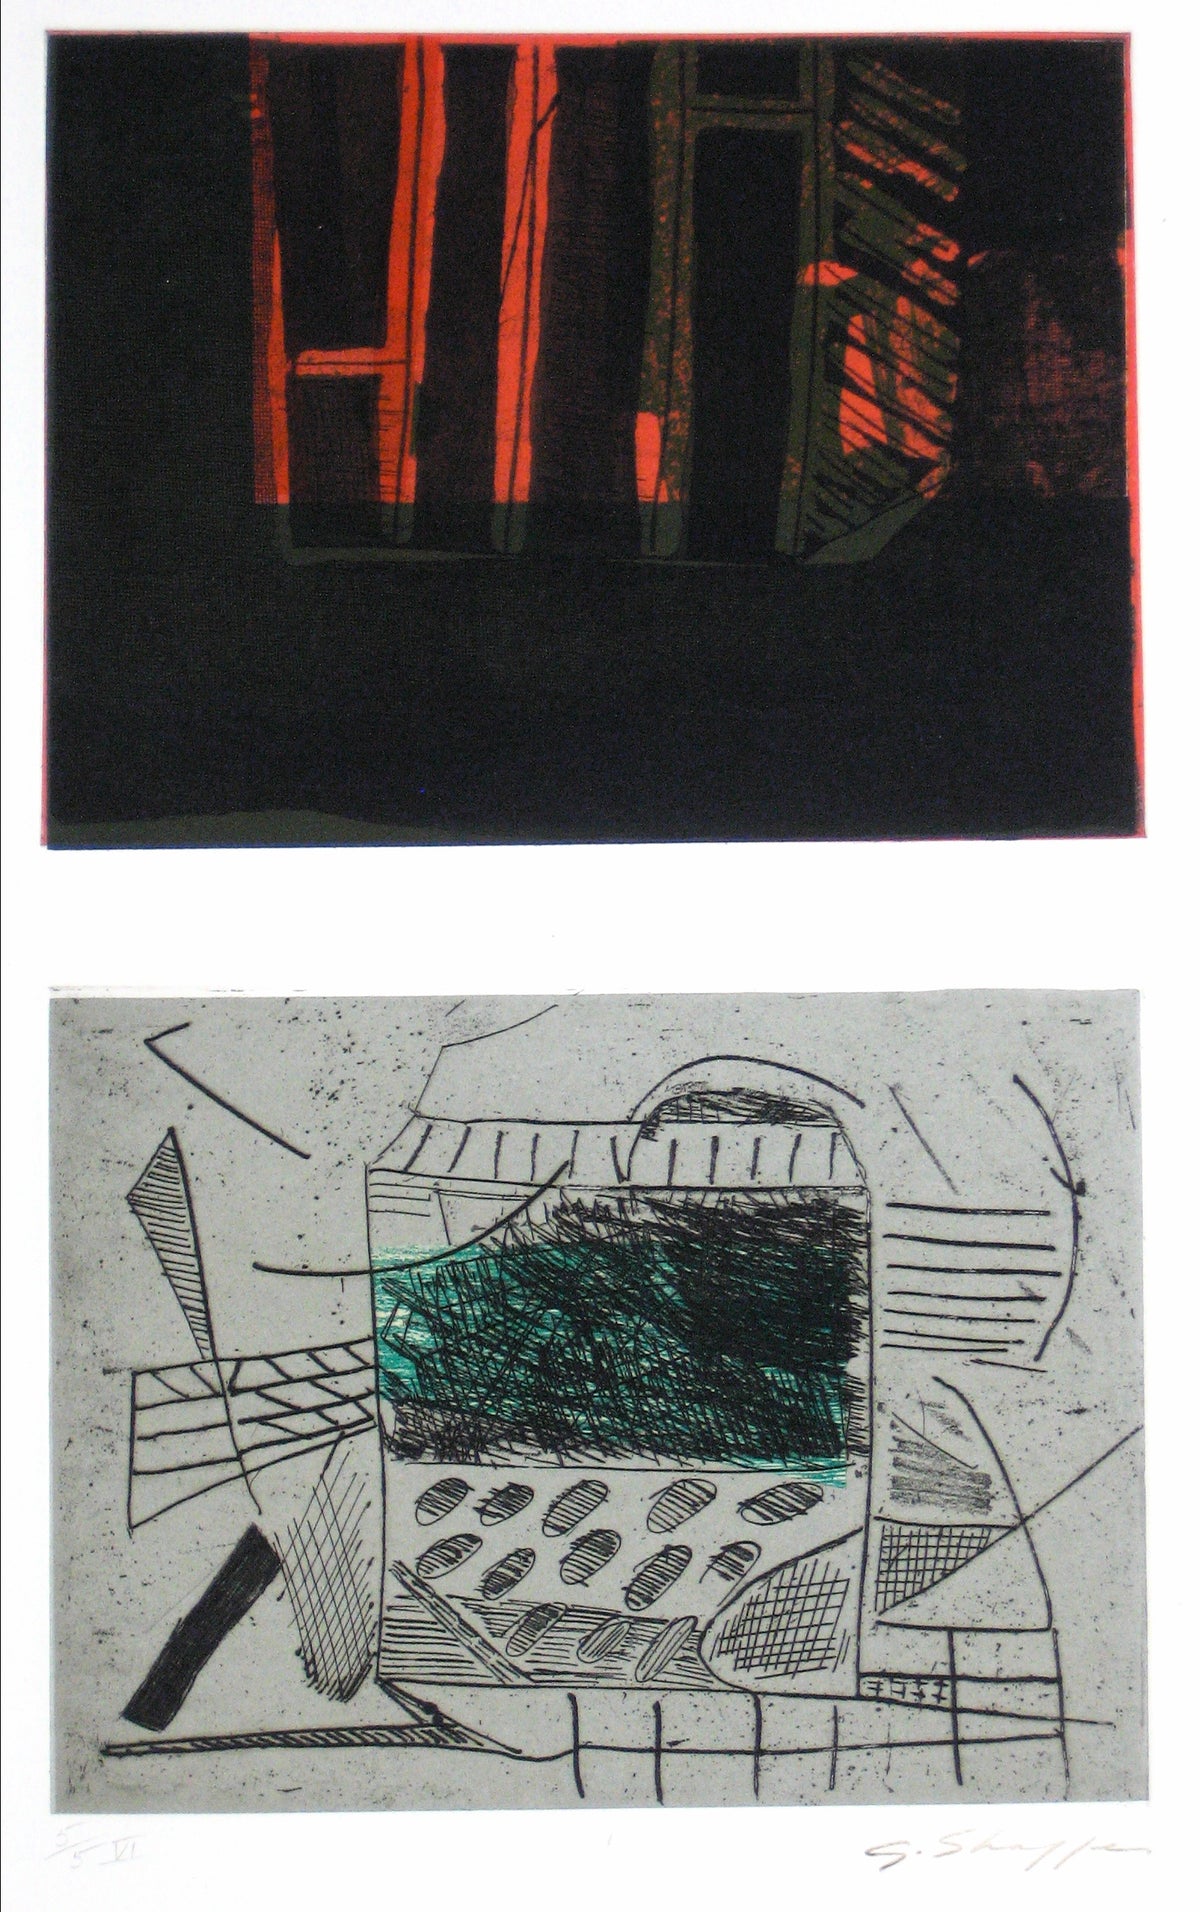 Abstracted Duel Image &lt;br&gt;1989 Litho &amp; Chine Colle &lt;br&gt;&lt;br&gt;#11778